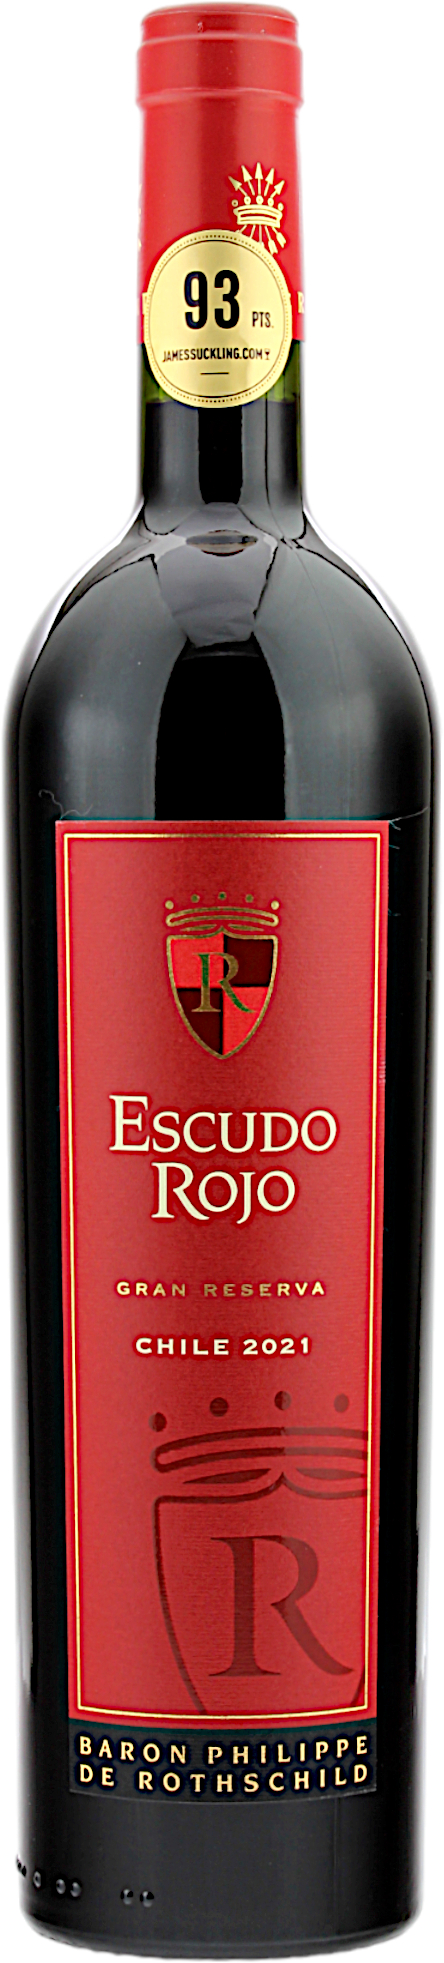 Escudo Rojo Gran Reserva Chile 2021 14.0% 0,75l 